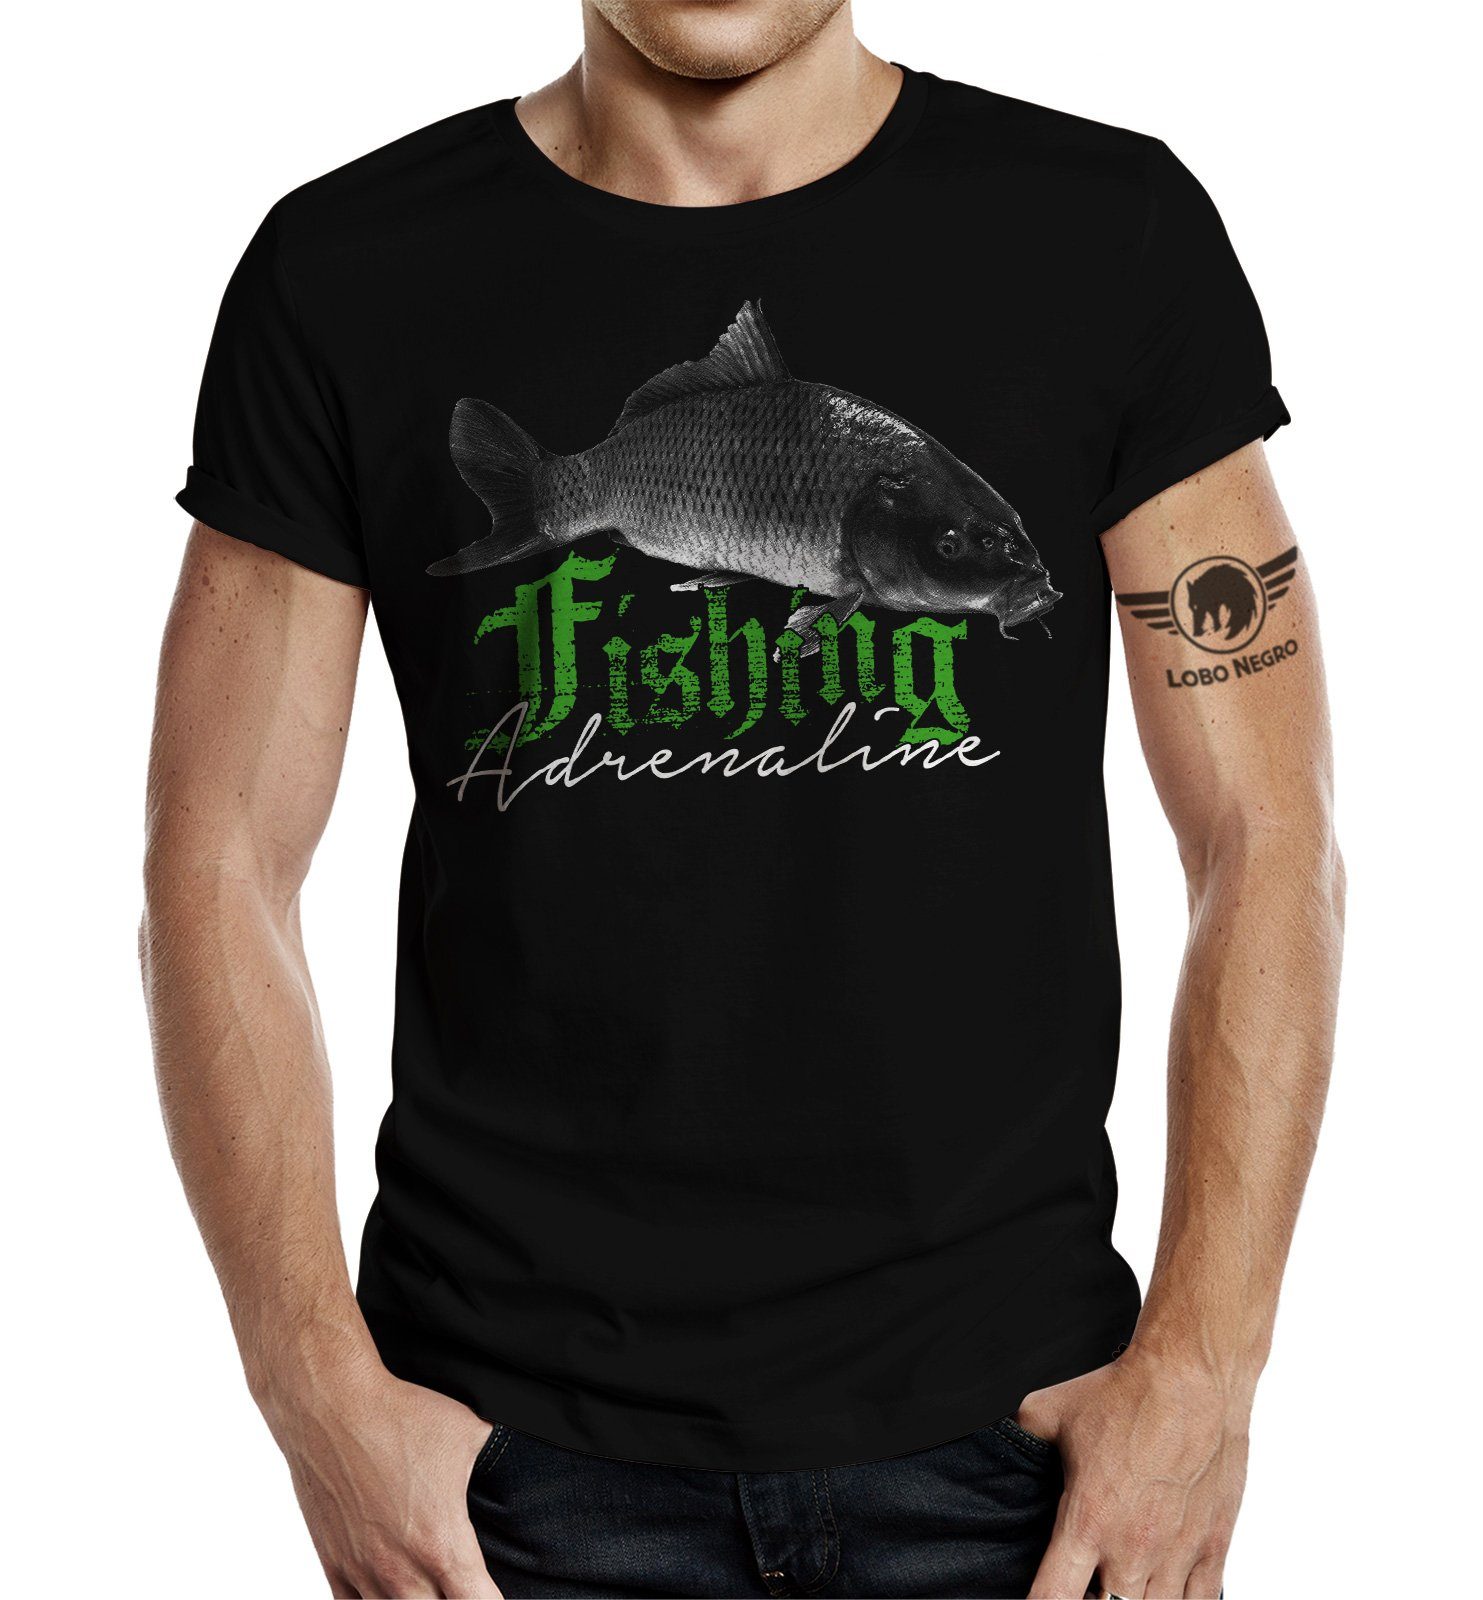 LOBO NEGRO® T-Shirt Fischer: als und Adrenaline für Angler Geschenk